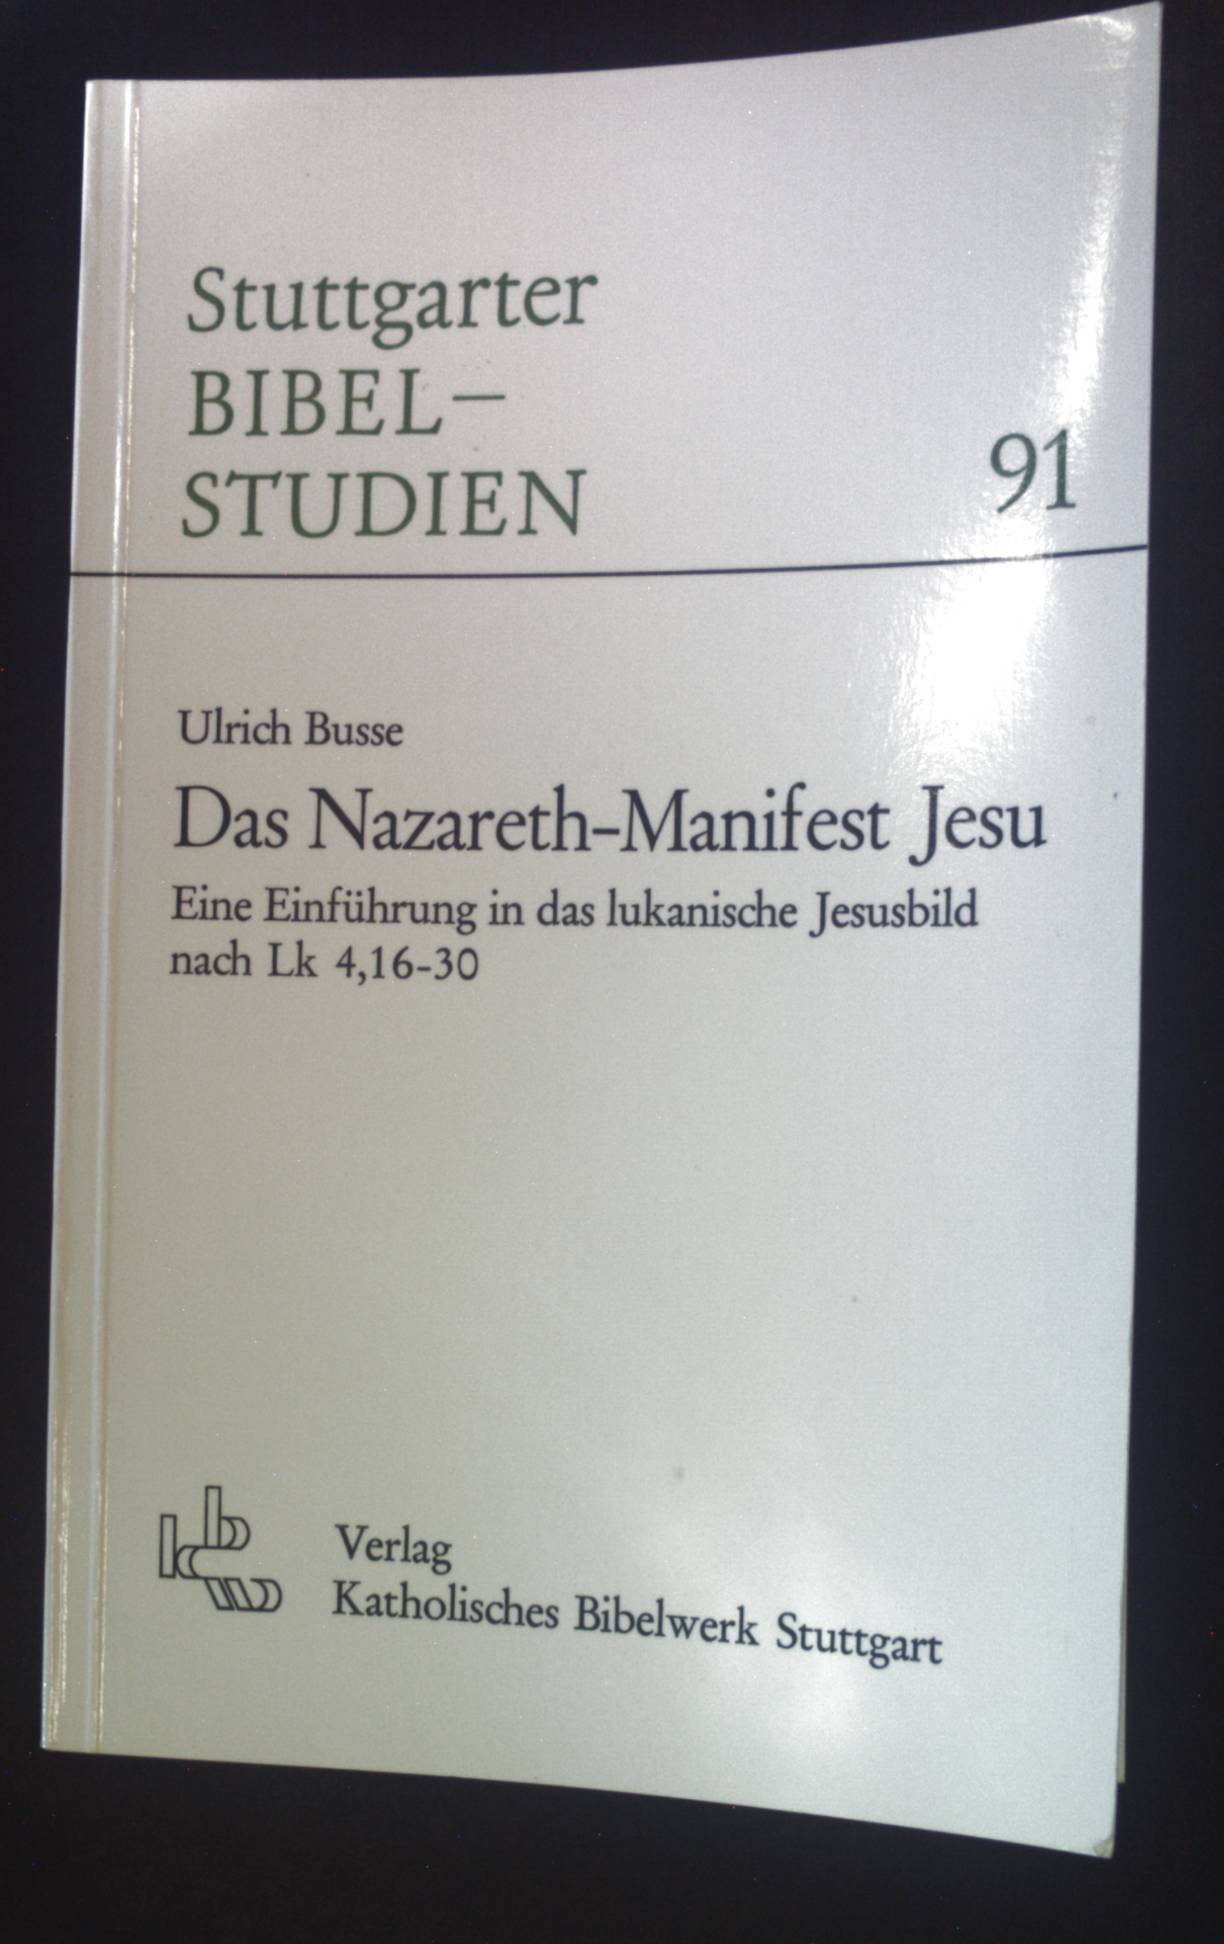 Das Nazareth-Manifest Jesu: e. Einf. in d. lukan. Jesusbild nach Lk 4, 16 - 30. Stuttgarter Bibelstudien 91. - Busse, Ulrich